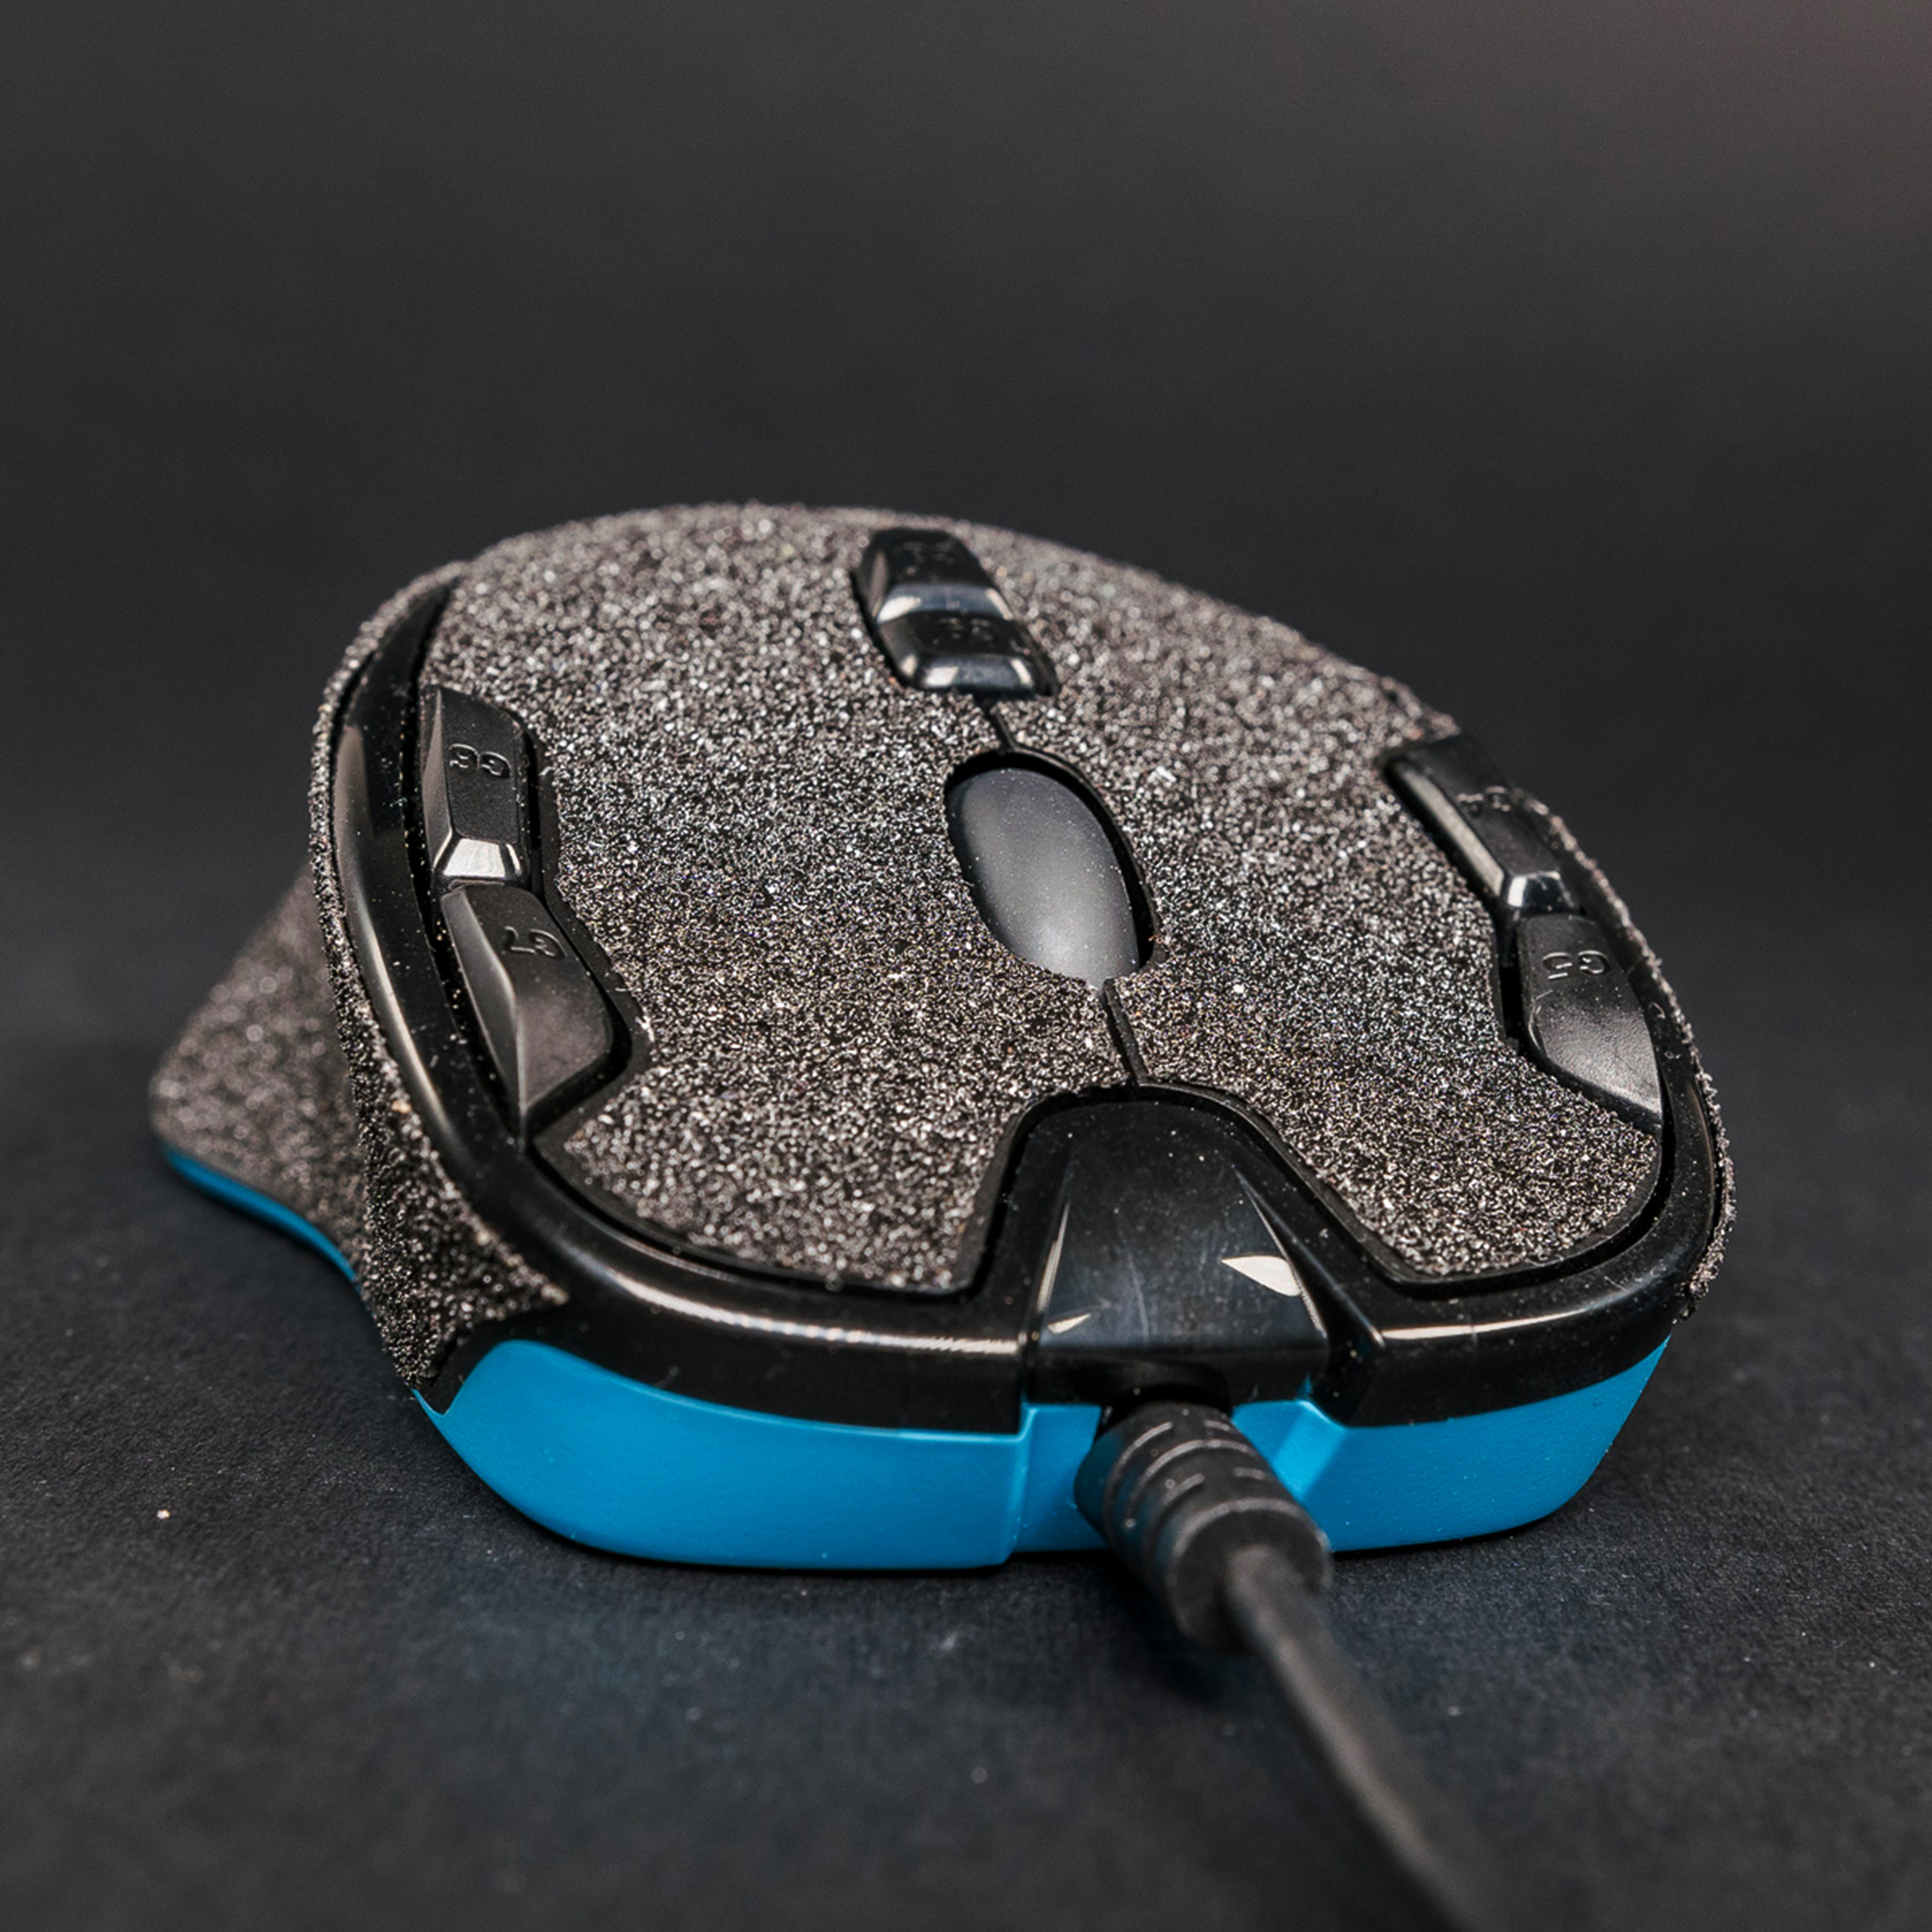 Logitech G300s Antgrip Antgrip Upgrade Your Gaming Mouse Make Your Gaming Mouse Grip Better